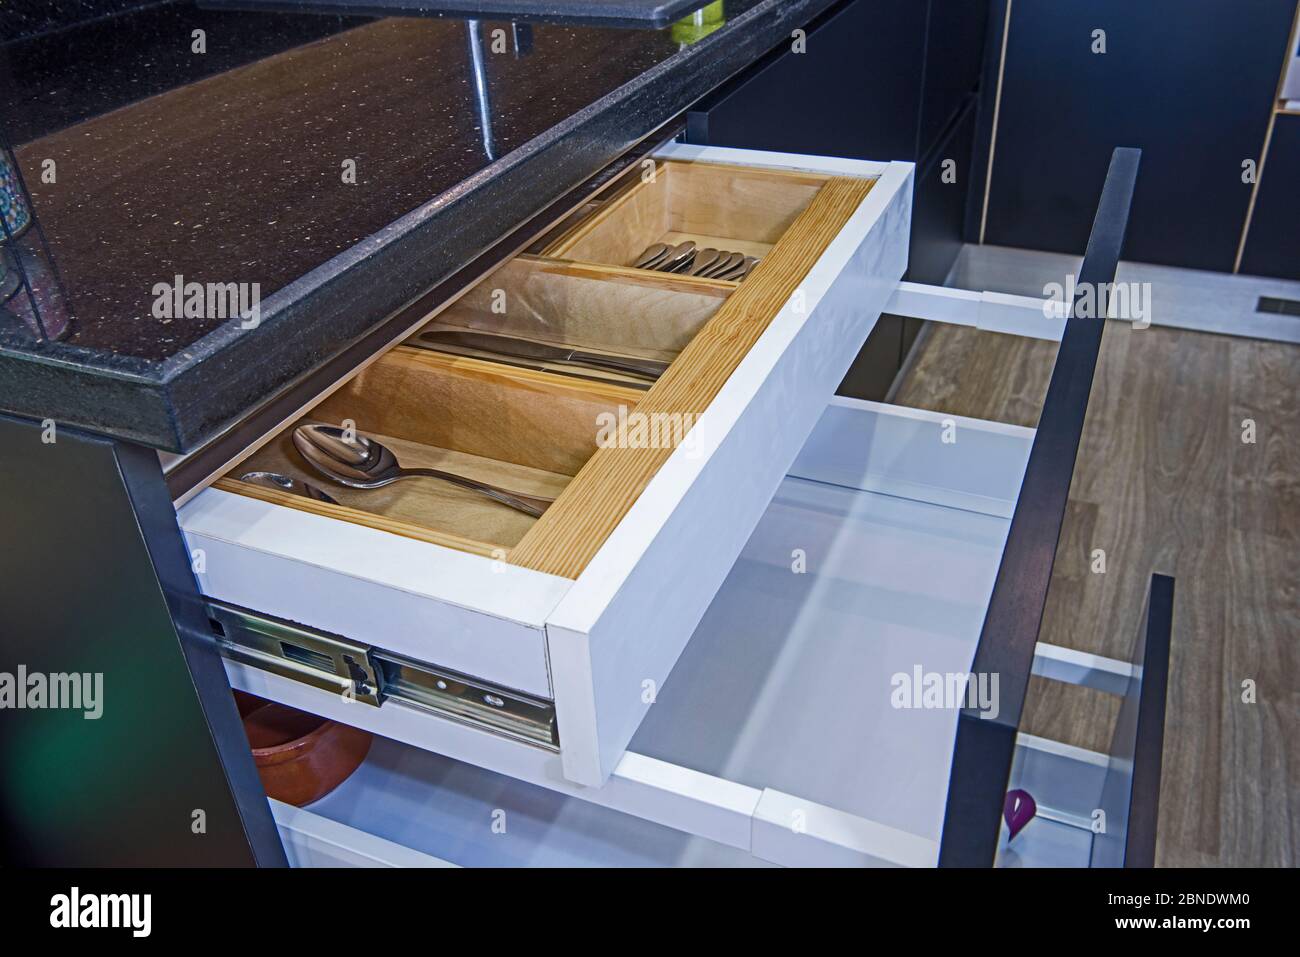 Decoración de diseño interior que muestra cocina moderna con cajón  deslizante y tomas eléctricas en el salón de exposición de apartamentos de  lujo Fotografía de stock - Alamy